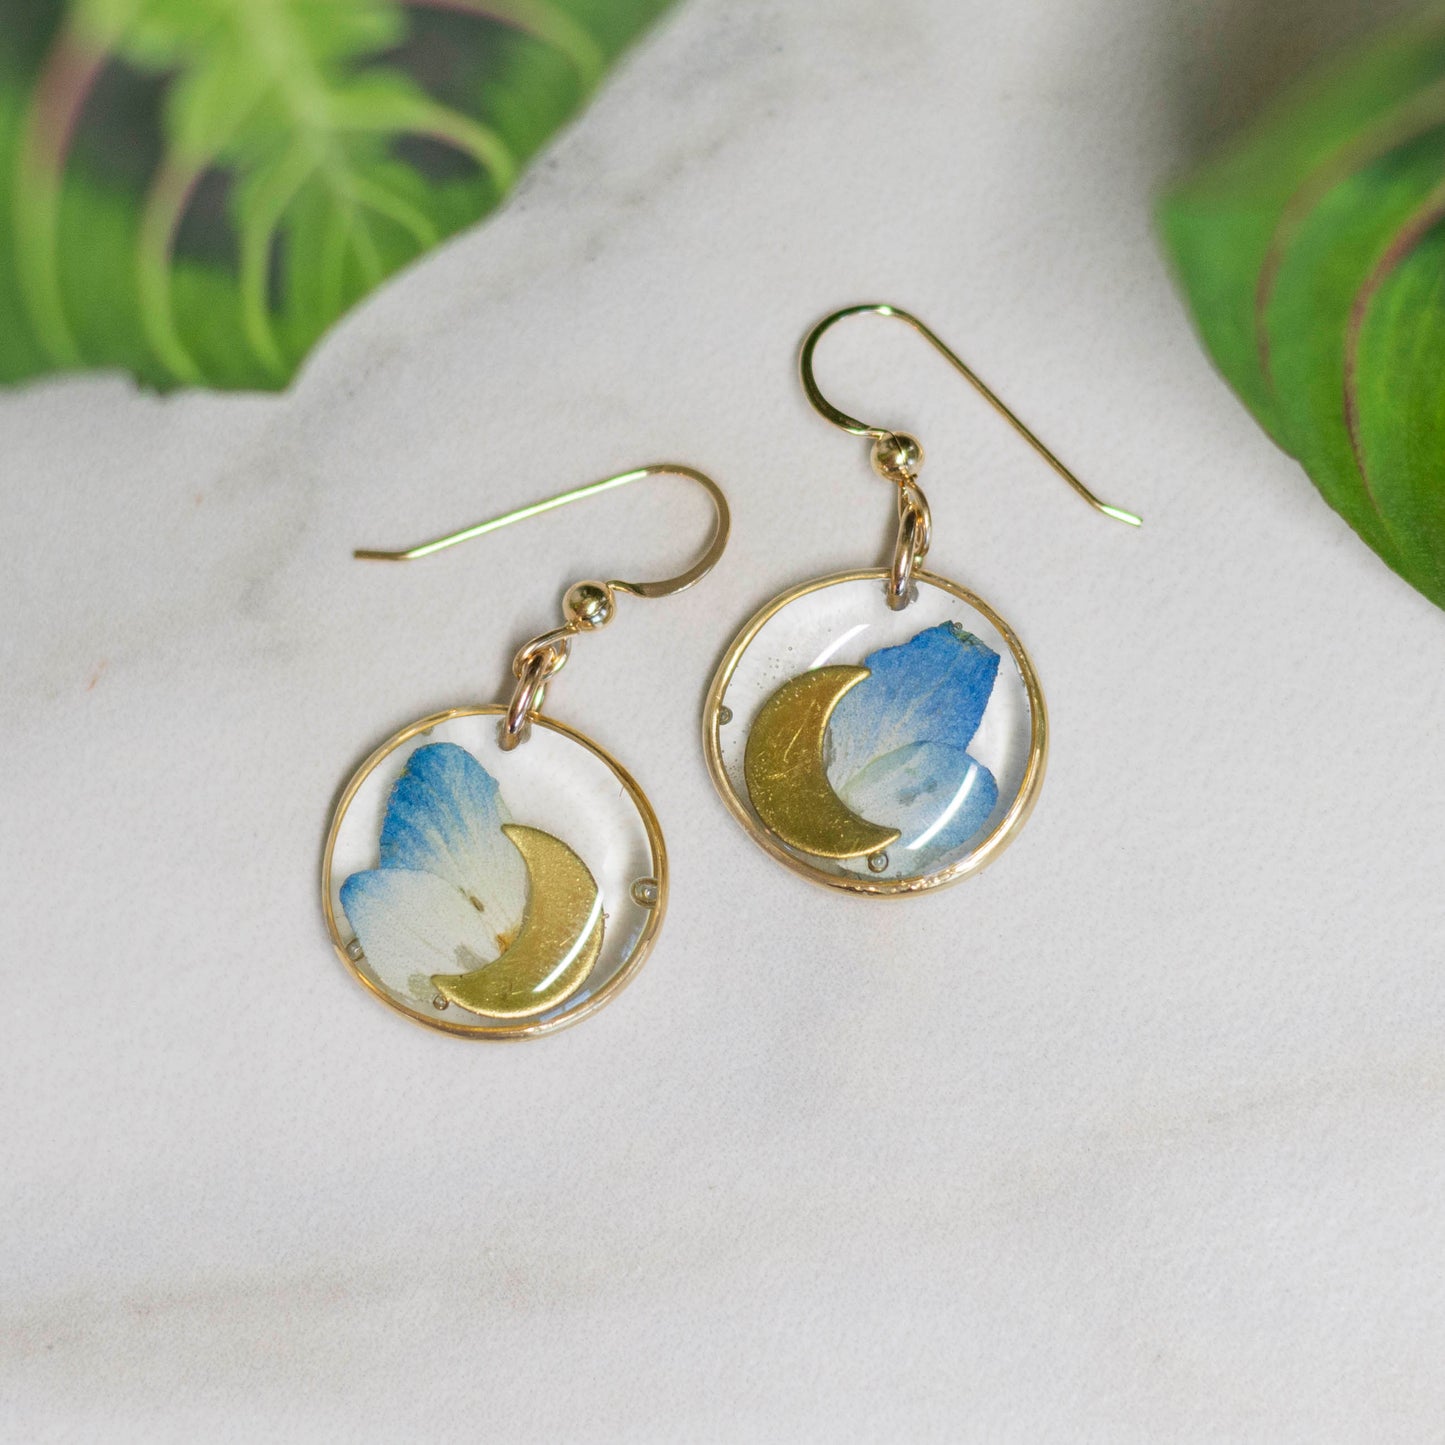 Botanical Earrings #19 - Blue Hydrangea & Moons